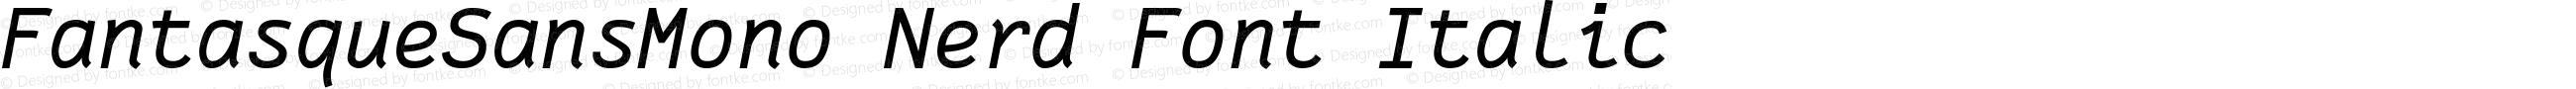 Fantasque Sans Mono Italic Nerd Font Plus Pomicons Plus Font Linux